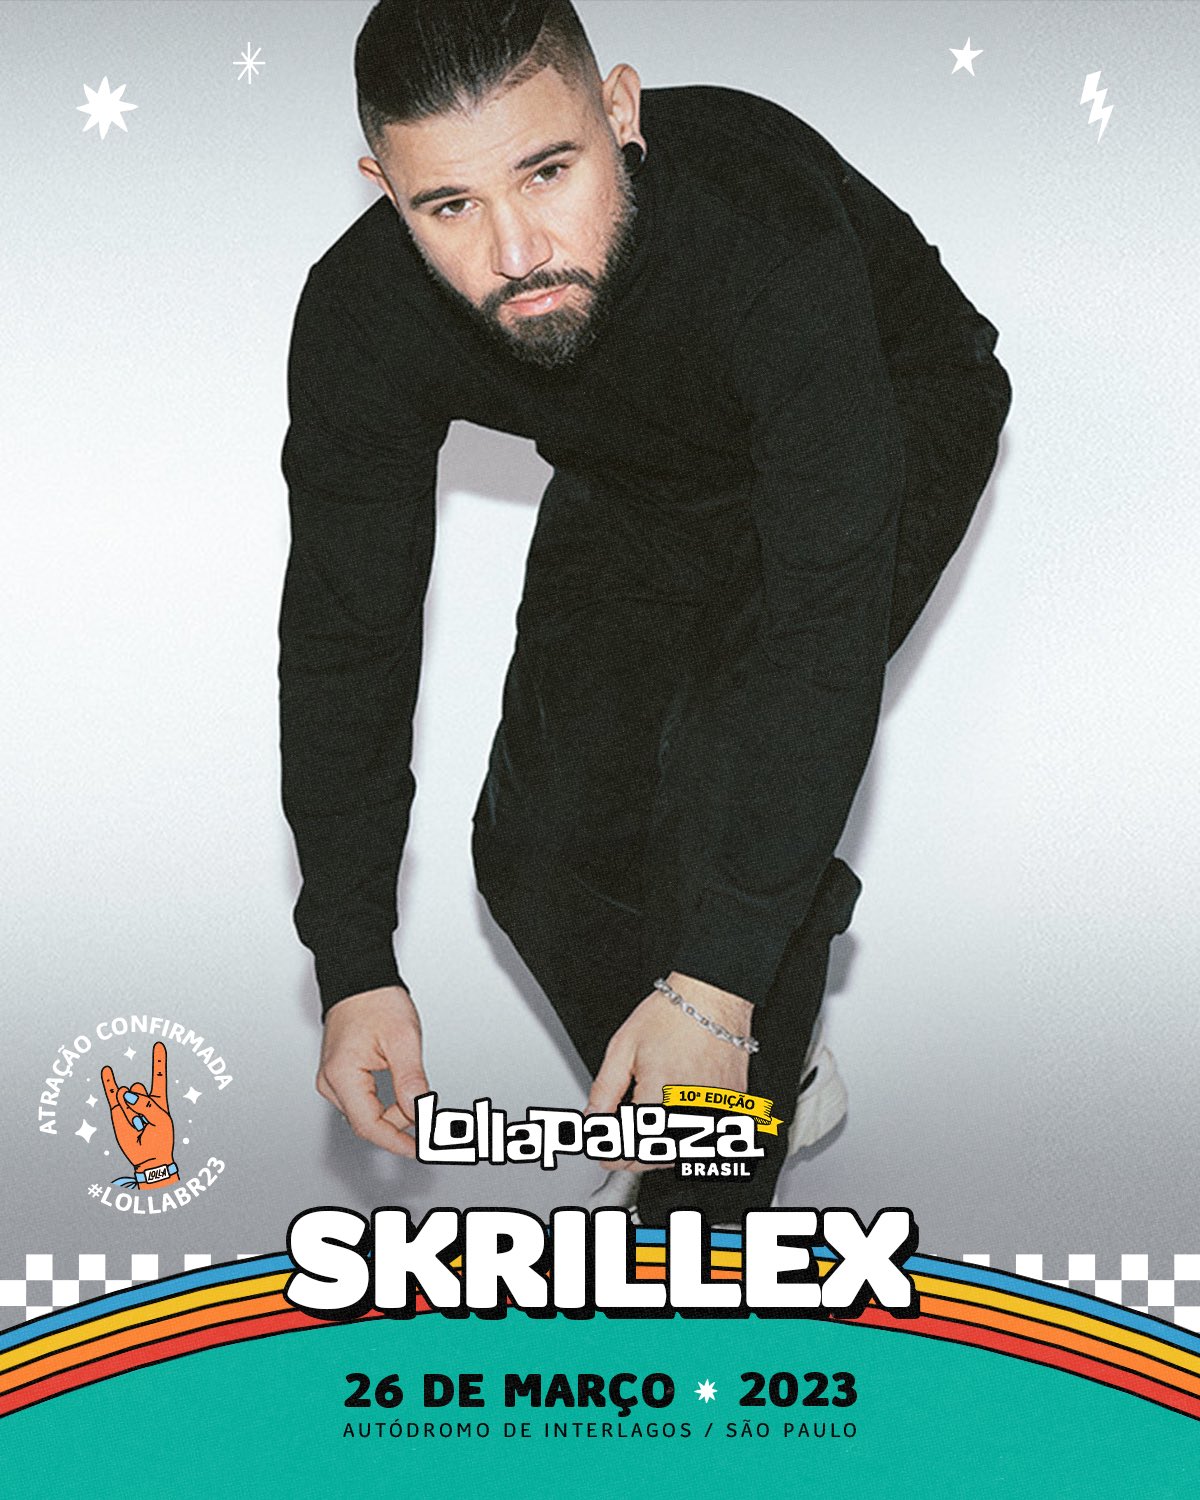 Skrillex at Lollapalooza Brazil 2023 